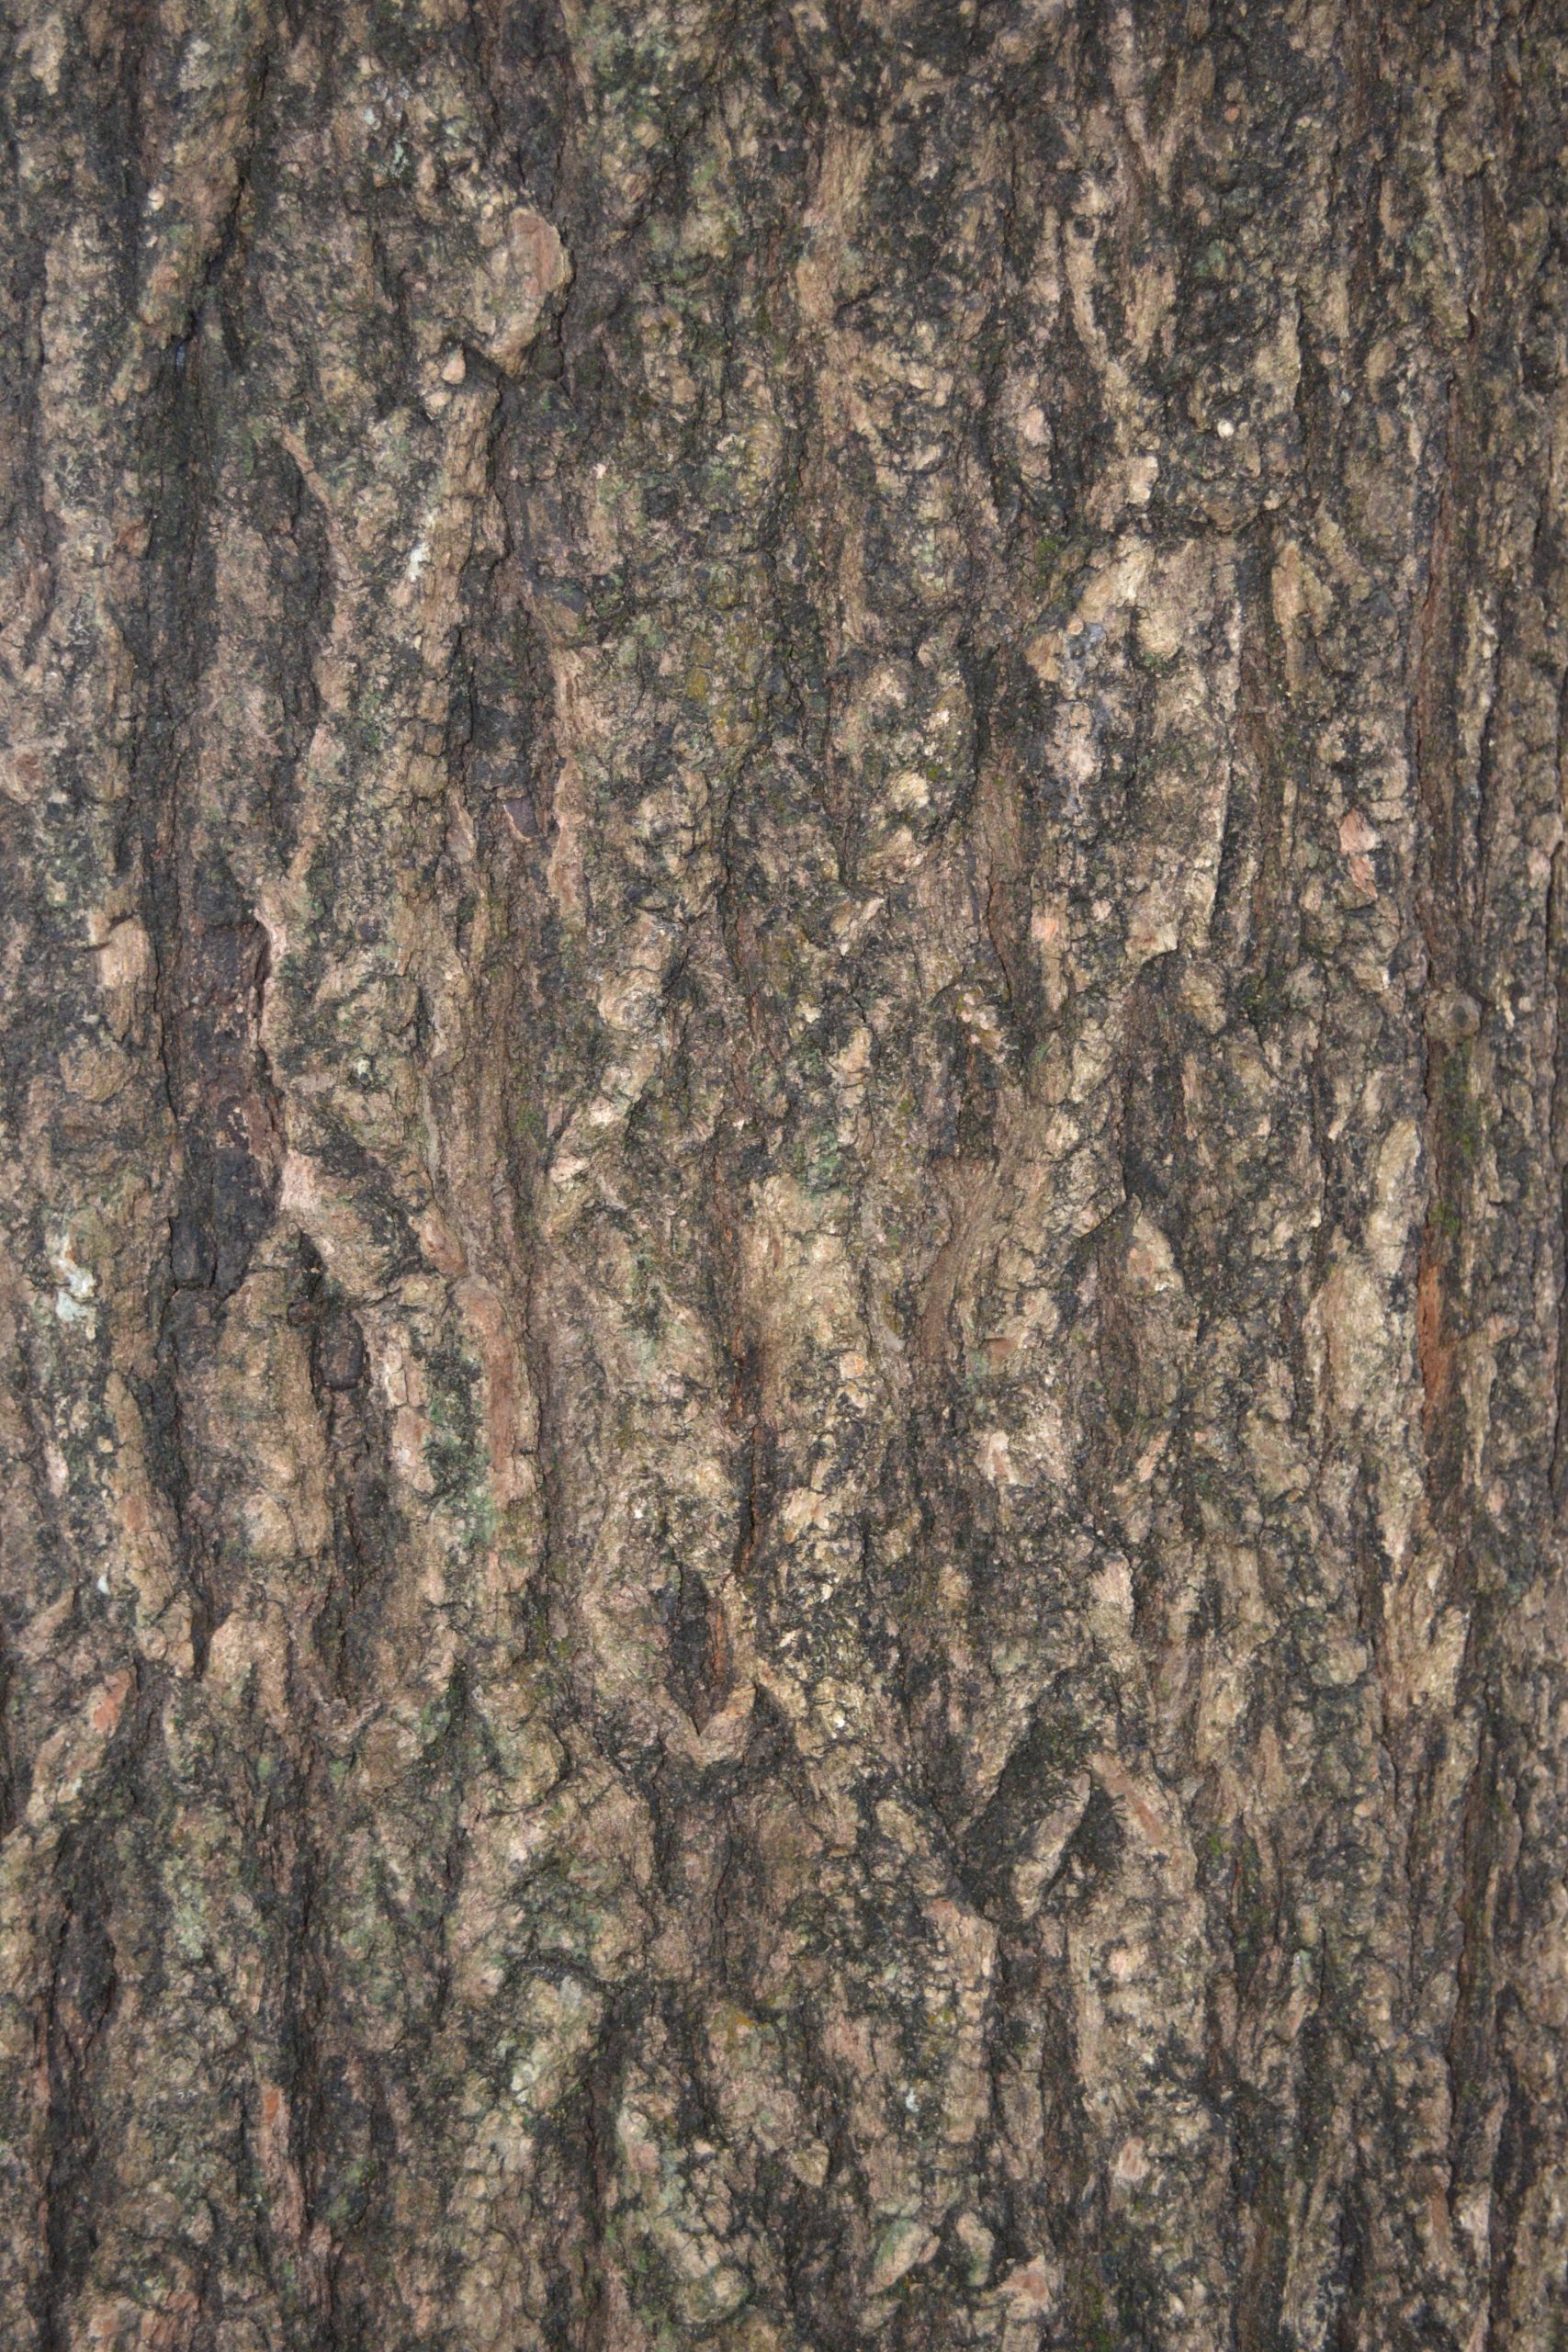 A tree bark